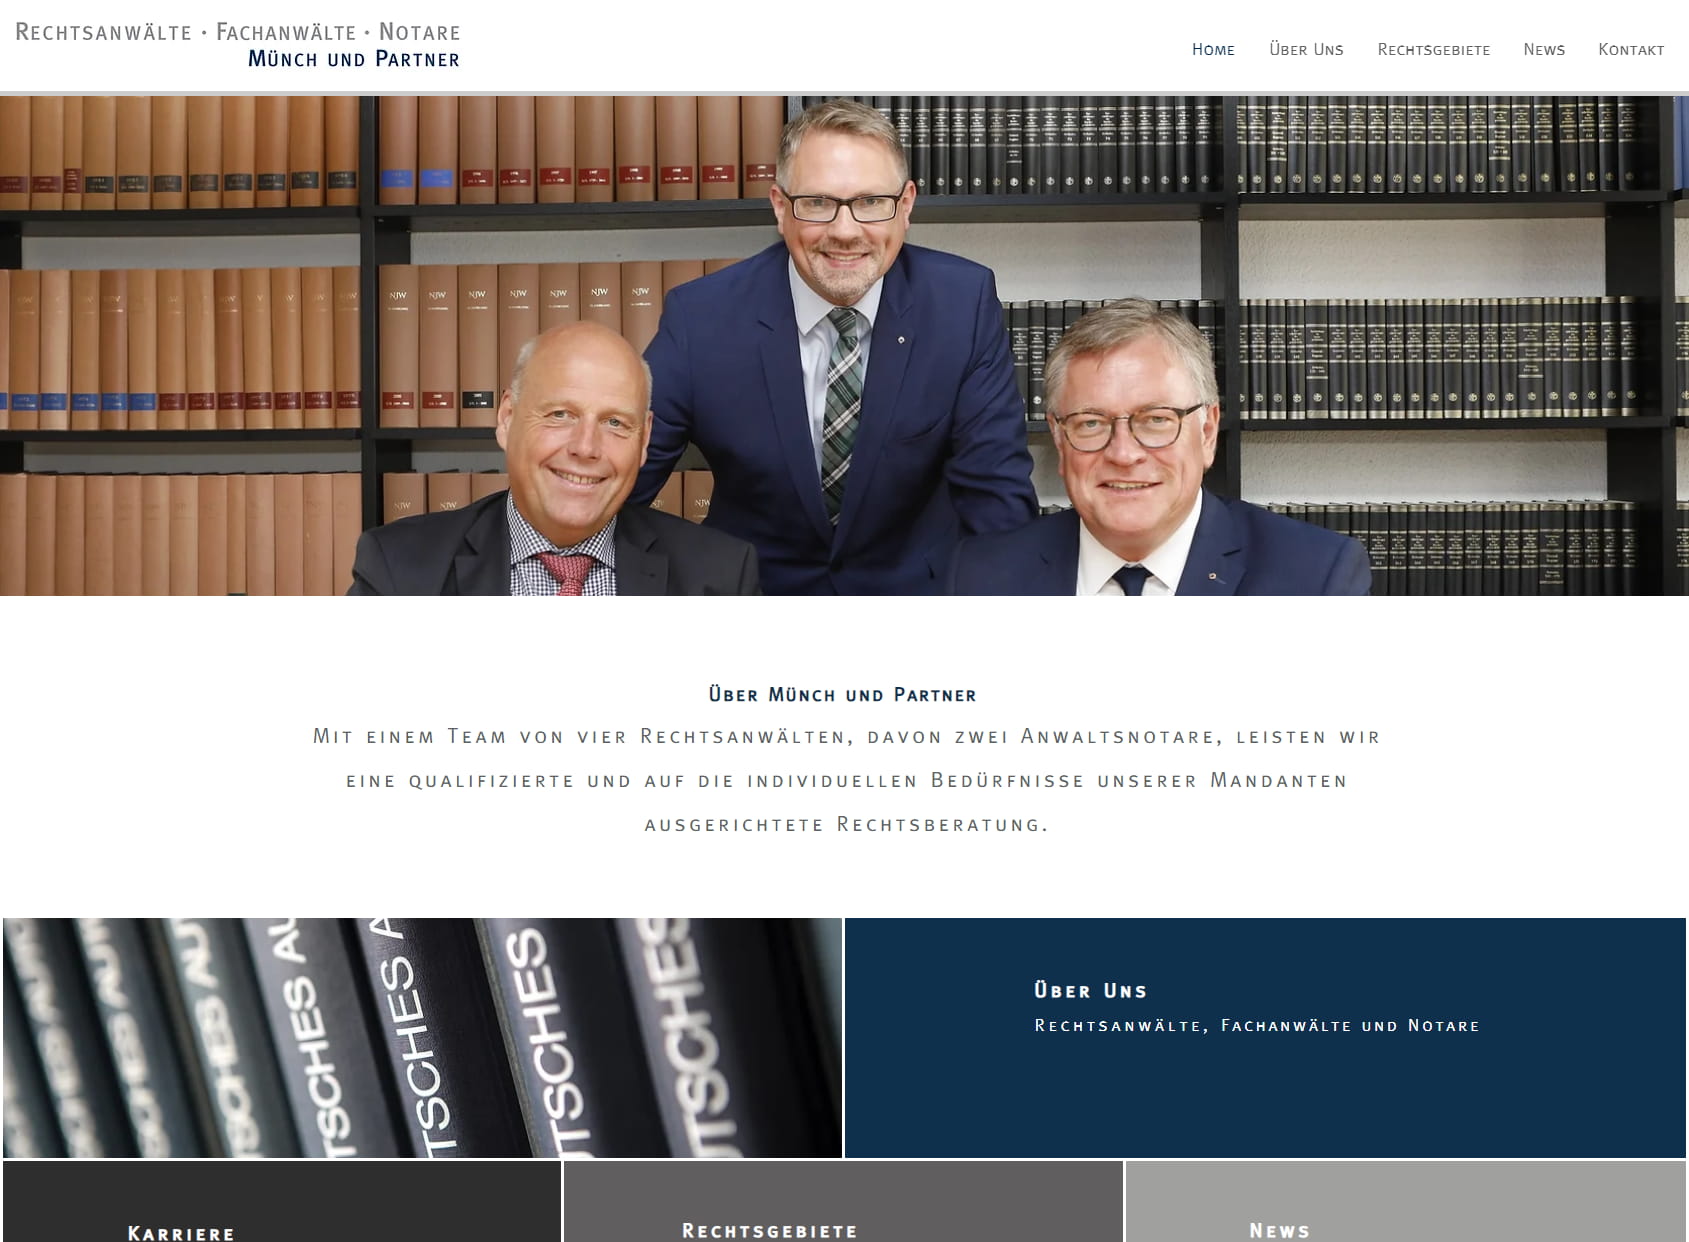 MÜNCH UND PARTNER Rechtsanwälte, Fachanwälte und Notare